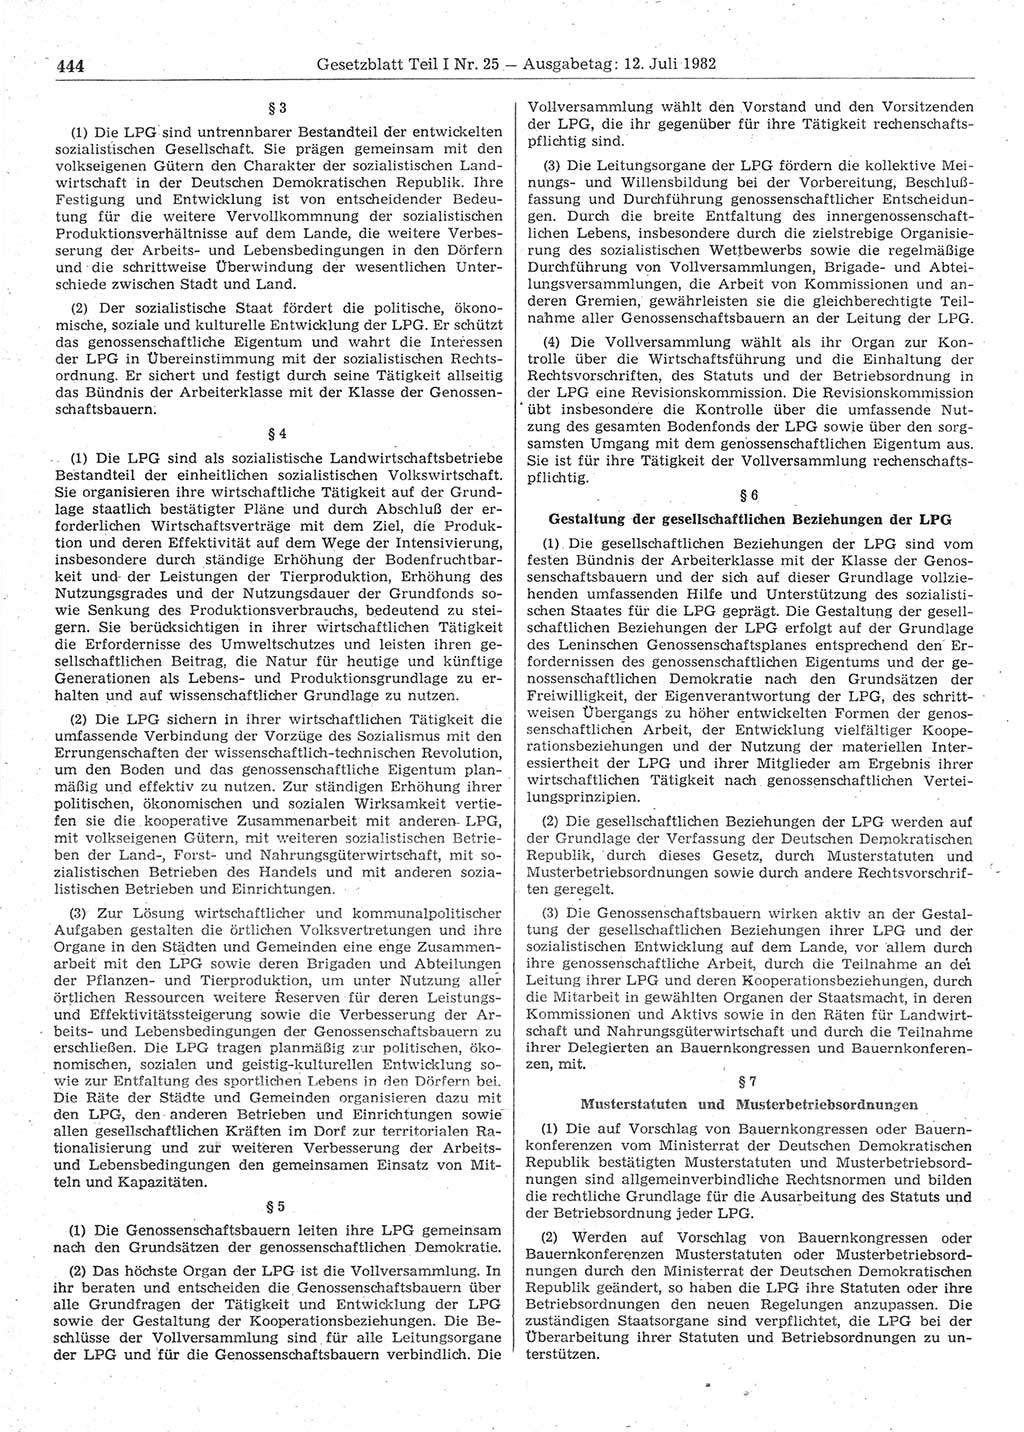 Gesetzblatt (GBl.) der Deutschen Demokratischen Republik (DDR) Teil Ⅰ 1982, Seite 444 (GBl. DDR Ⅰ 1982, S. 444)